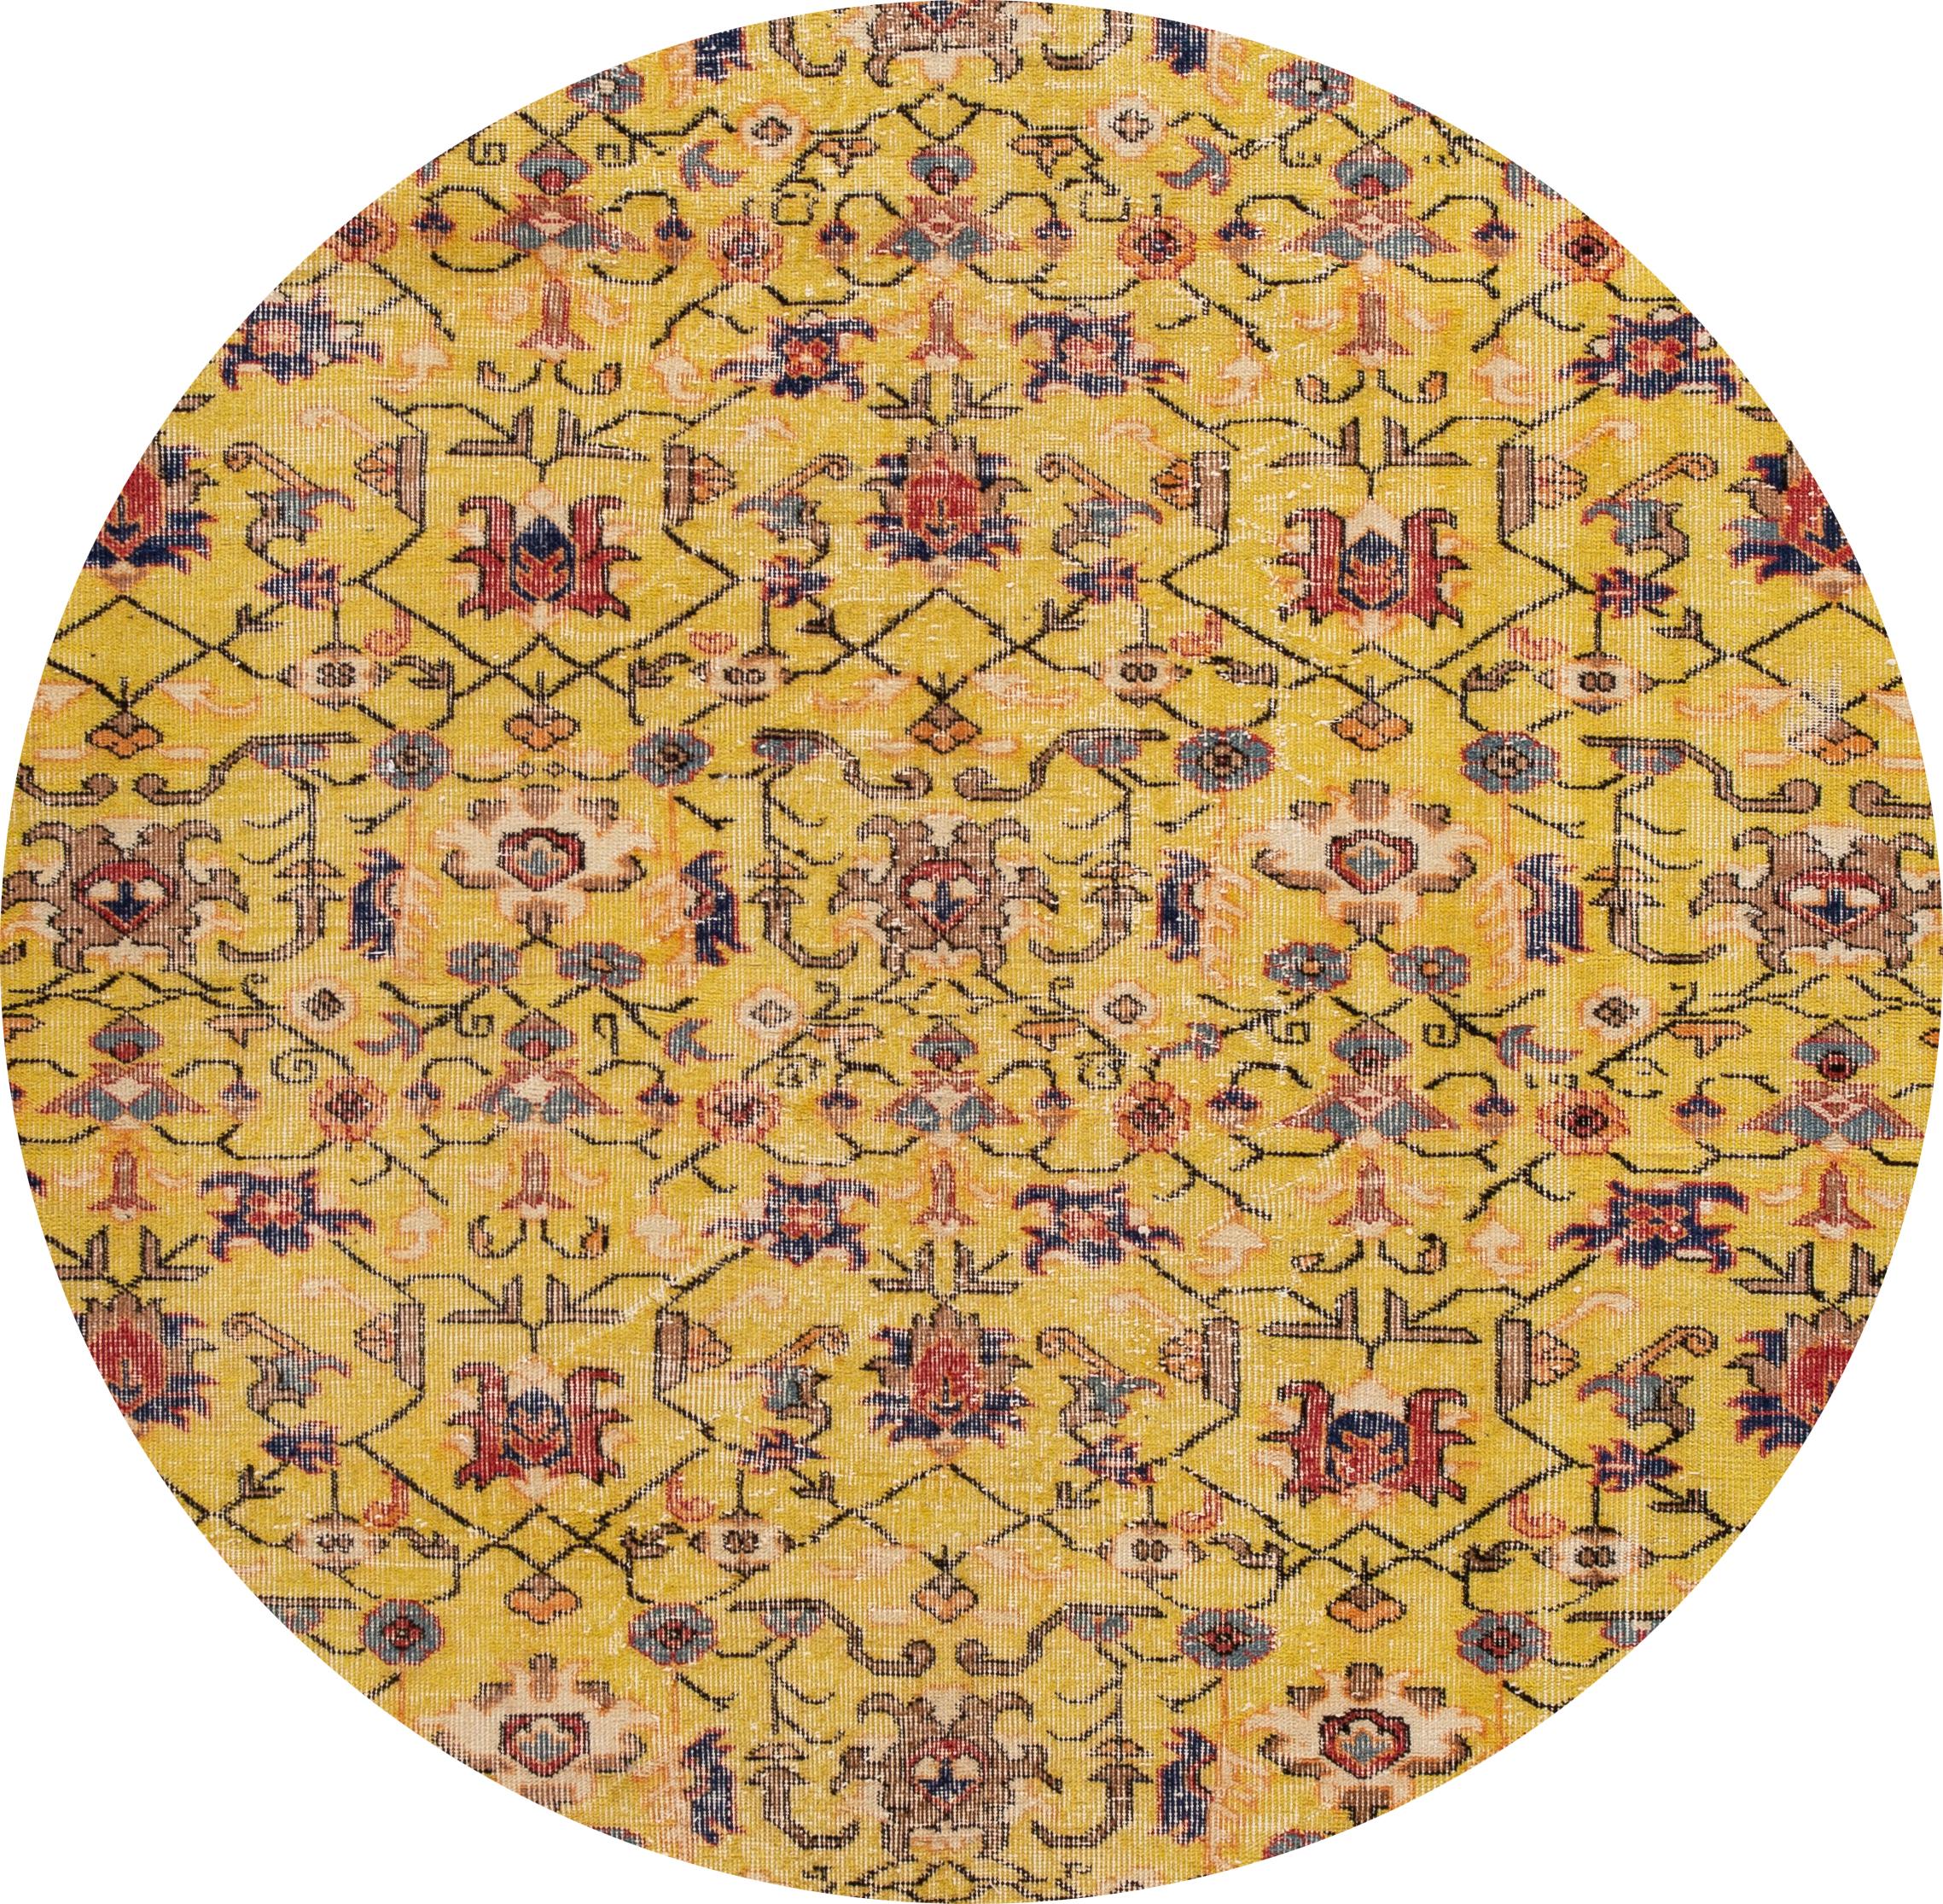 Magnifique chemin de table Art Deco turc vintage, en laine nouée à la main, avec un champ jaune et des accents multicolores dans un magnifique motif floral all-over,

Ce tapis mesure : 5'09